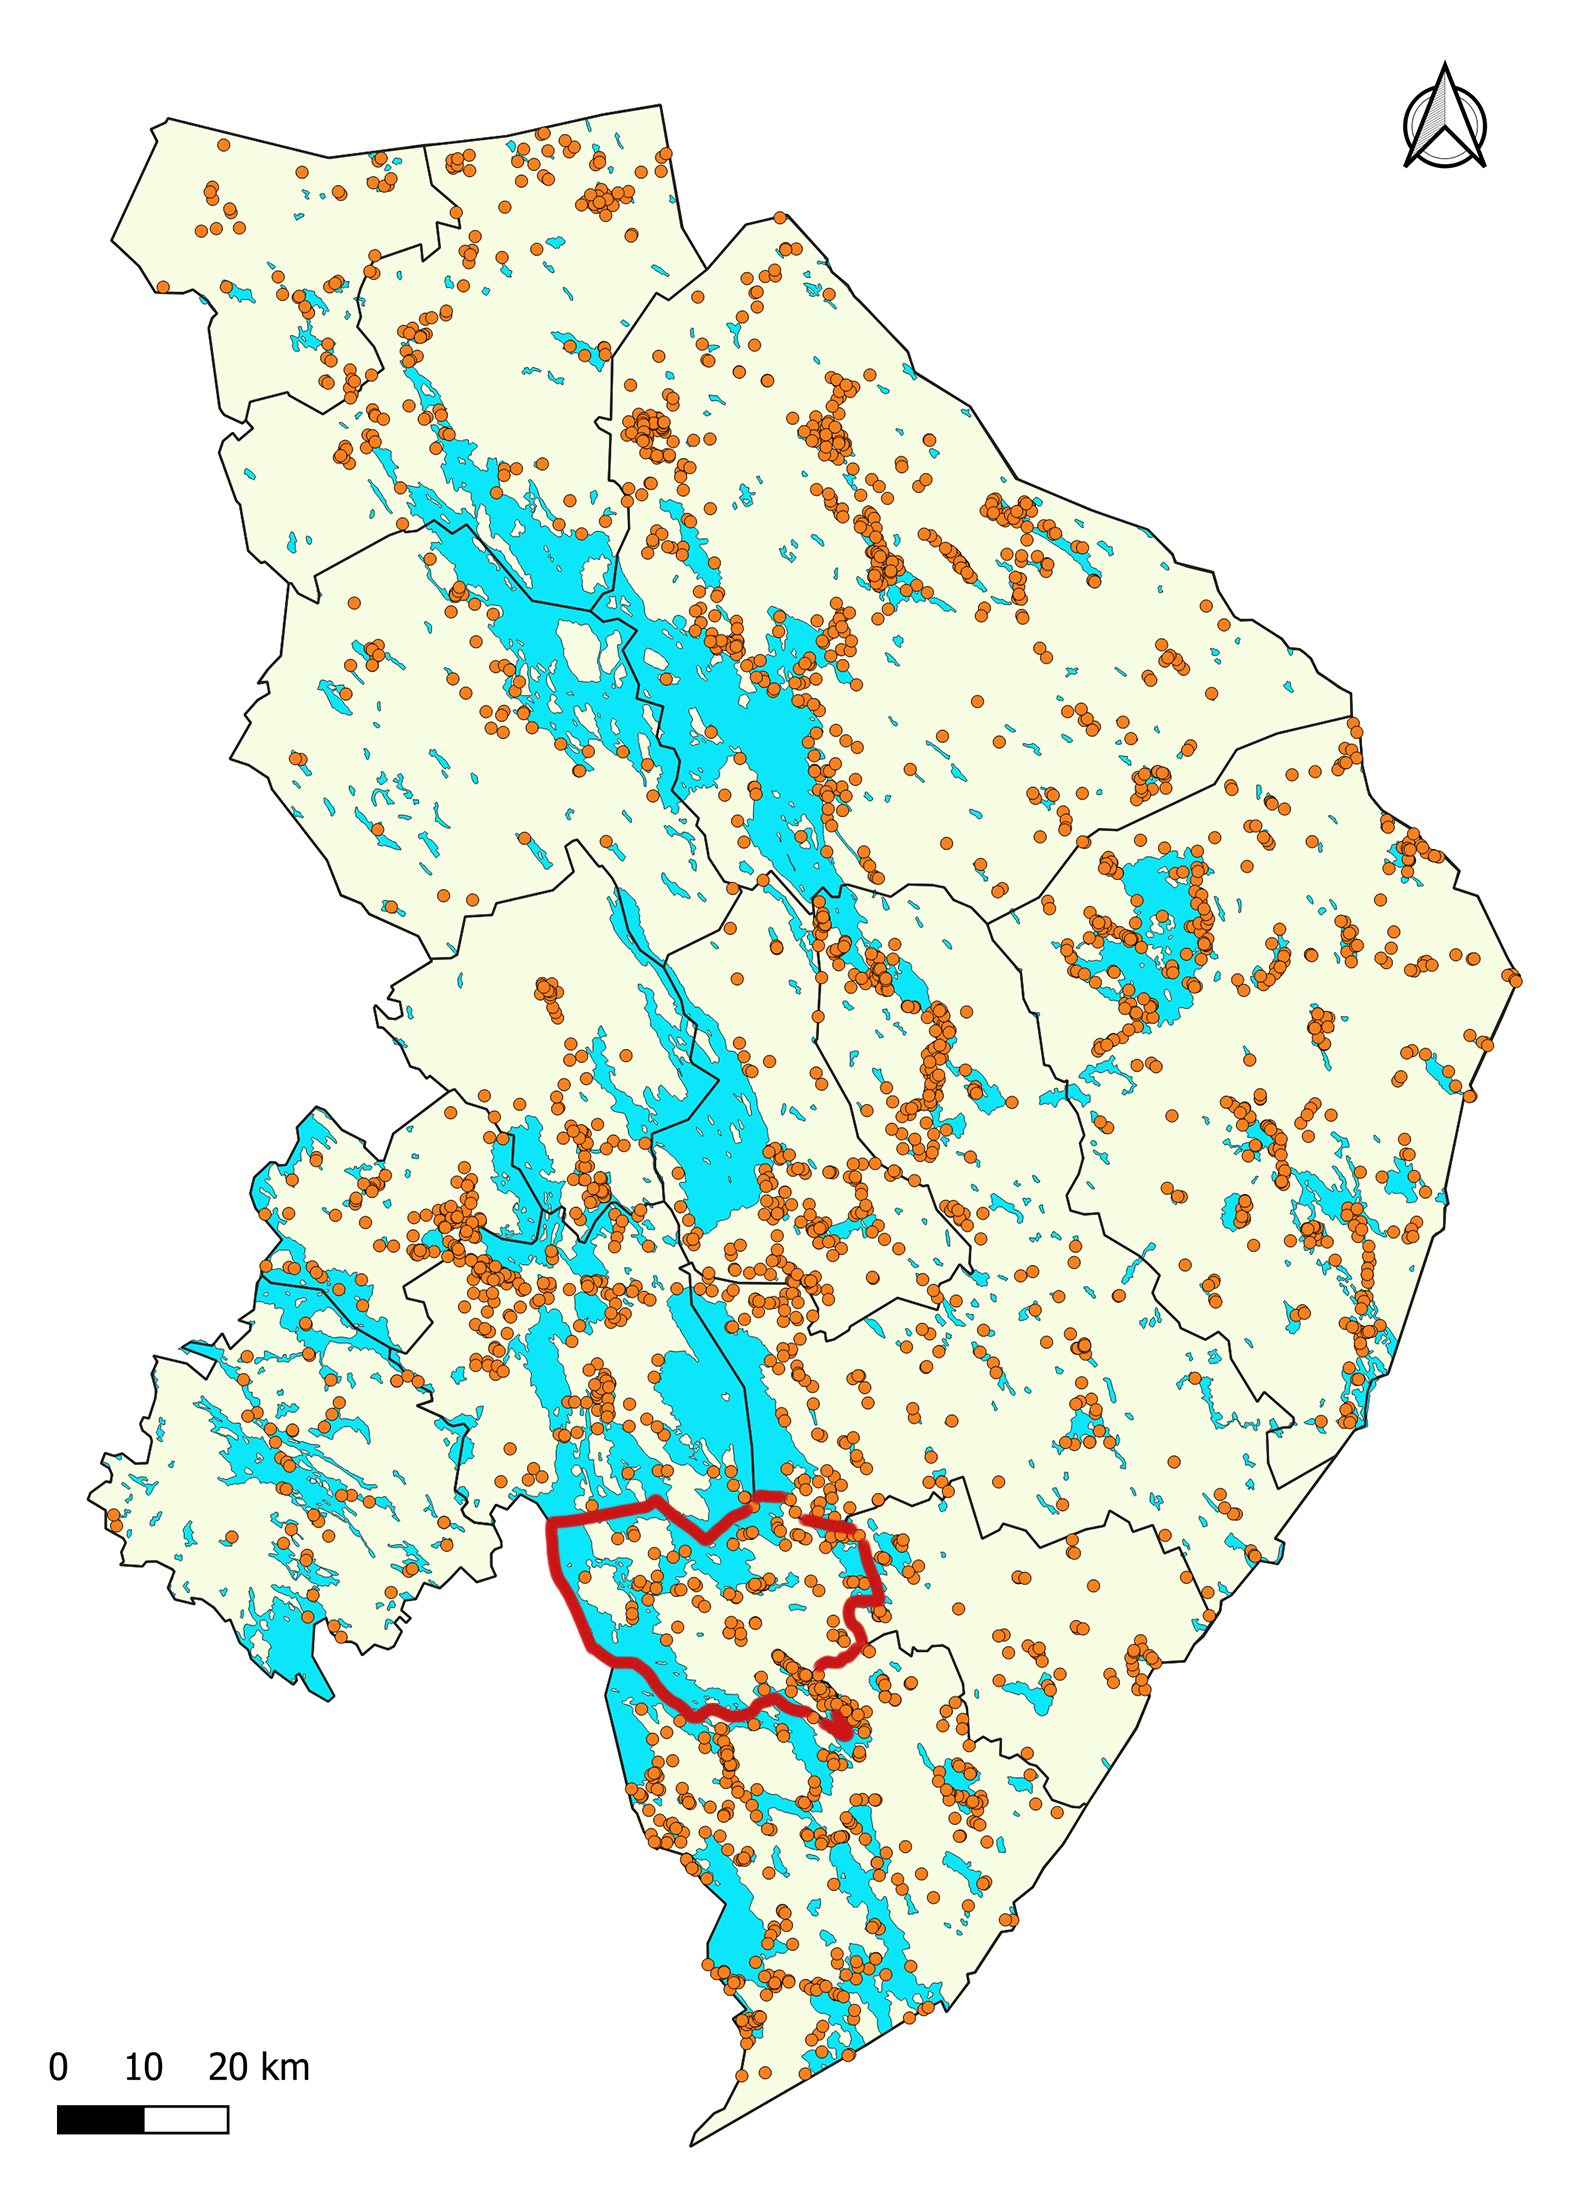 Rääkkylän alueen kiinteät muinaisjäännökset. Kartassa Rääkkylän kunnan rajat on piirretty punaisella, muut kunnat näkyvät mustin rajoin. Oranssit pallot kertovat löydöspaikoista. Vesistöt on merkitty sinisellä.